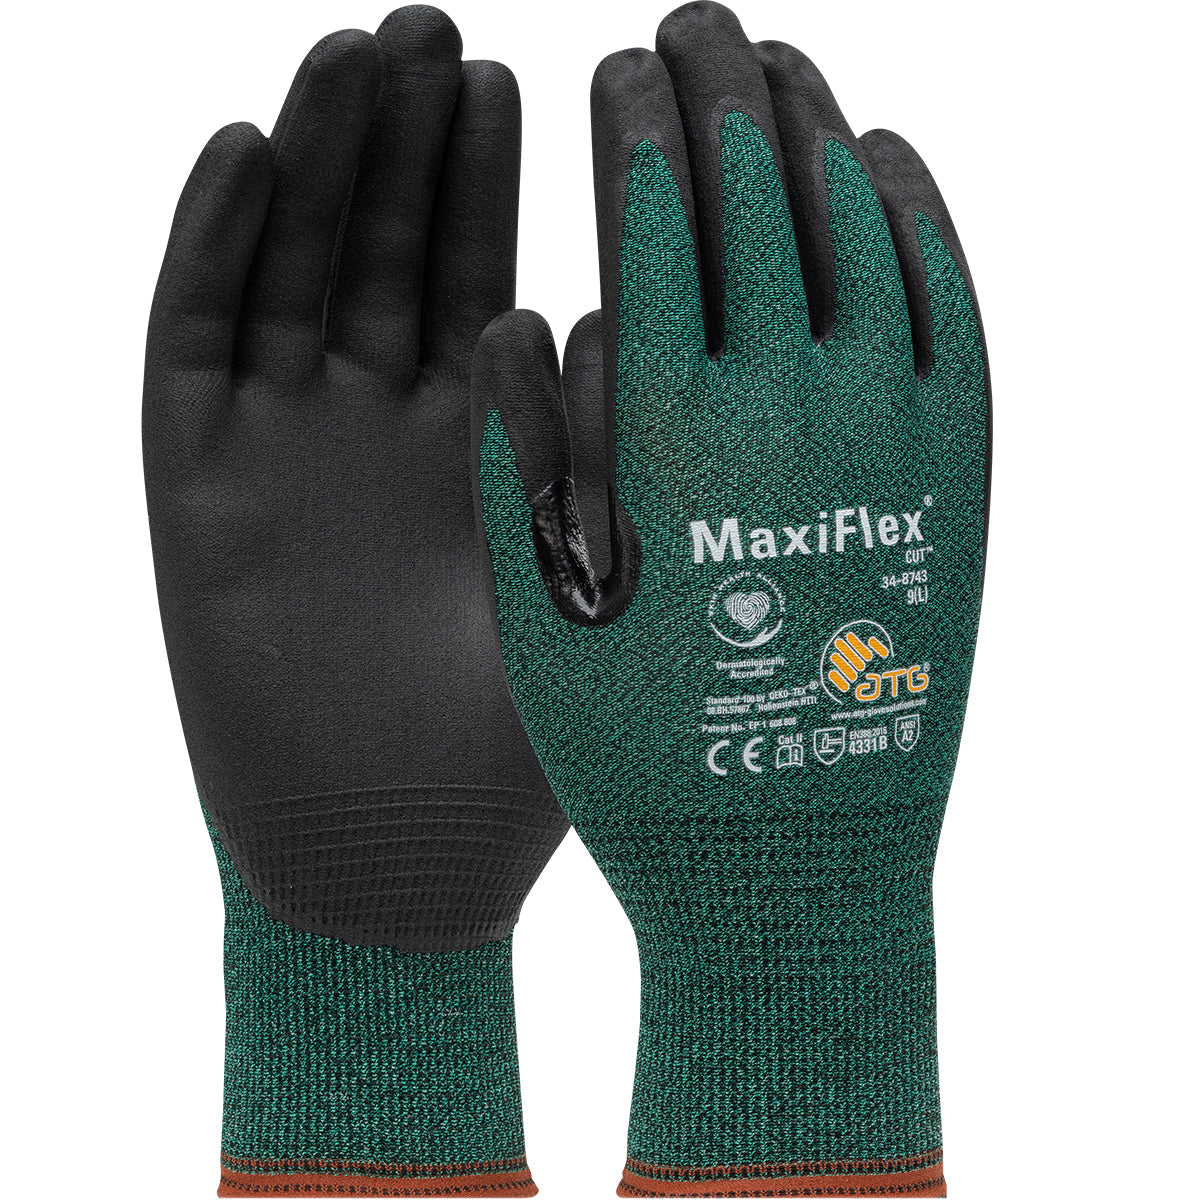 MaxiFlex® Cut™ Premium Nitrile Coated MicroFoam Grip Work Glove